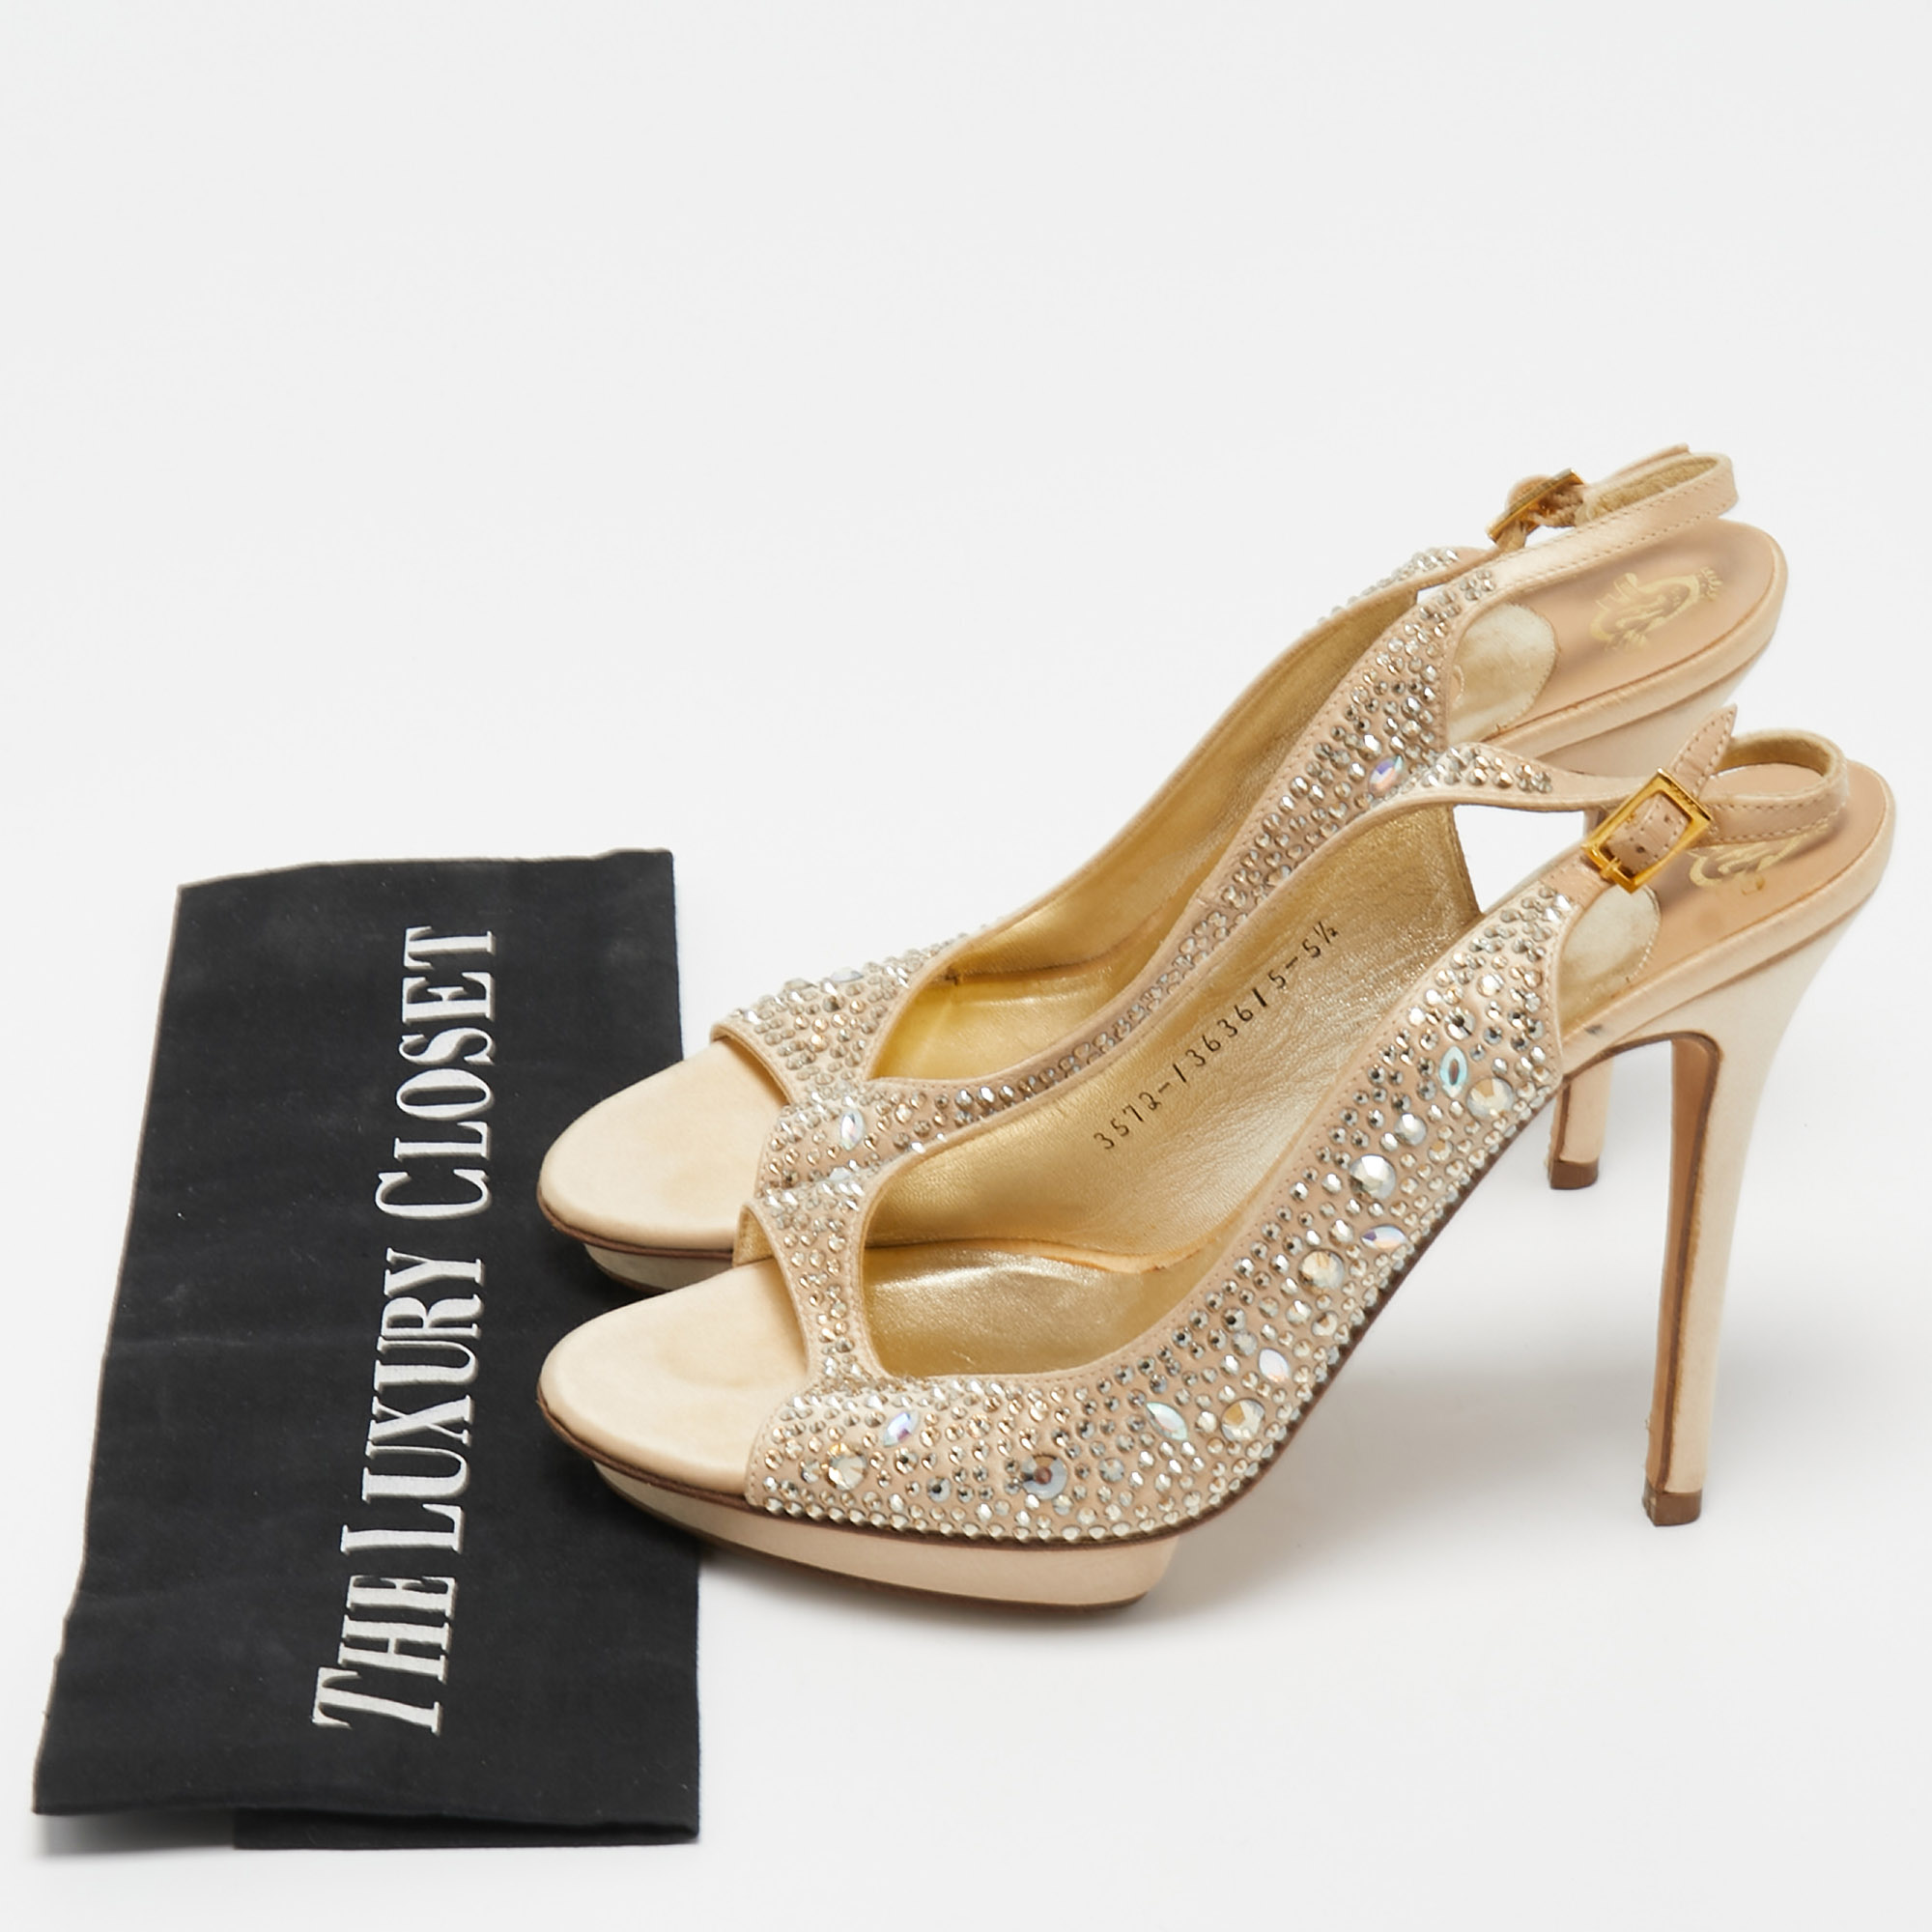 Gina Beige Crystal Embellished Satin Slingback Sandals Size 38.5